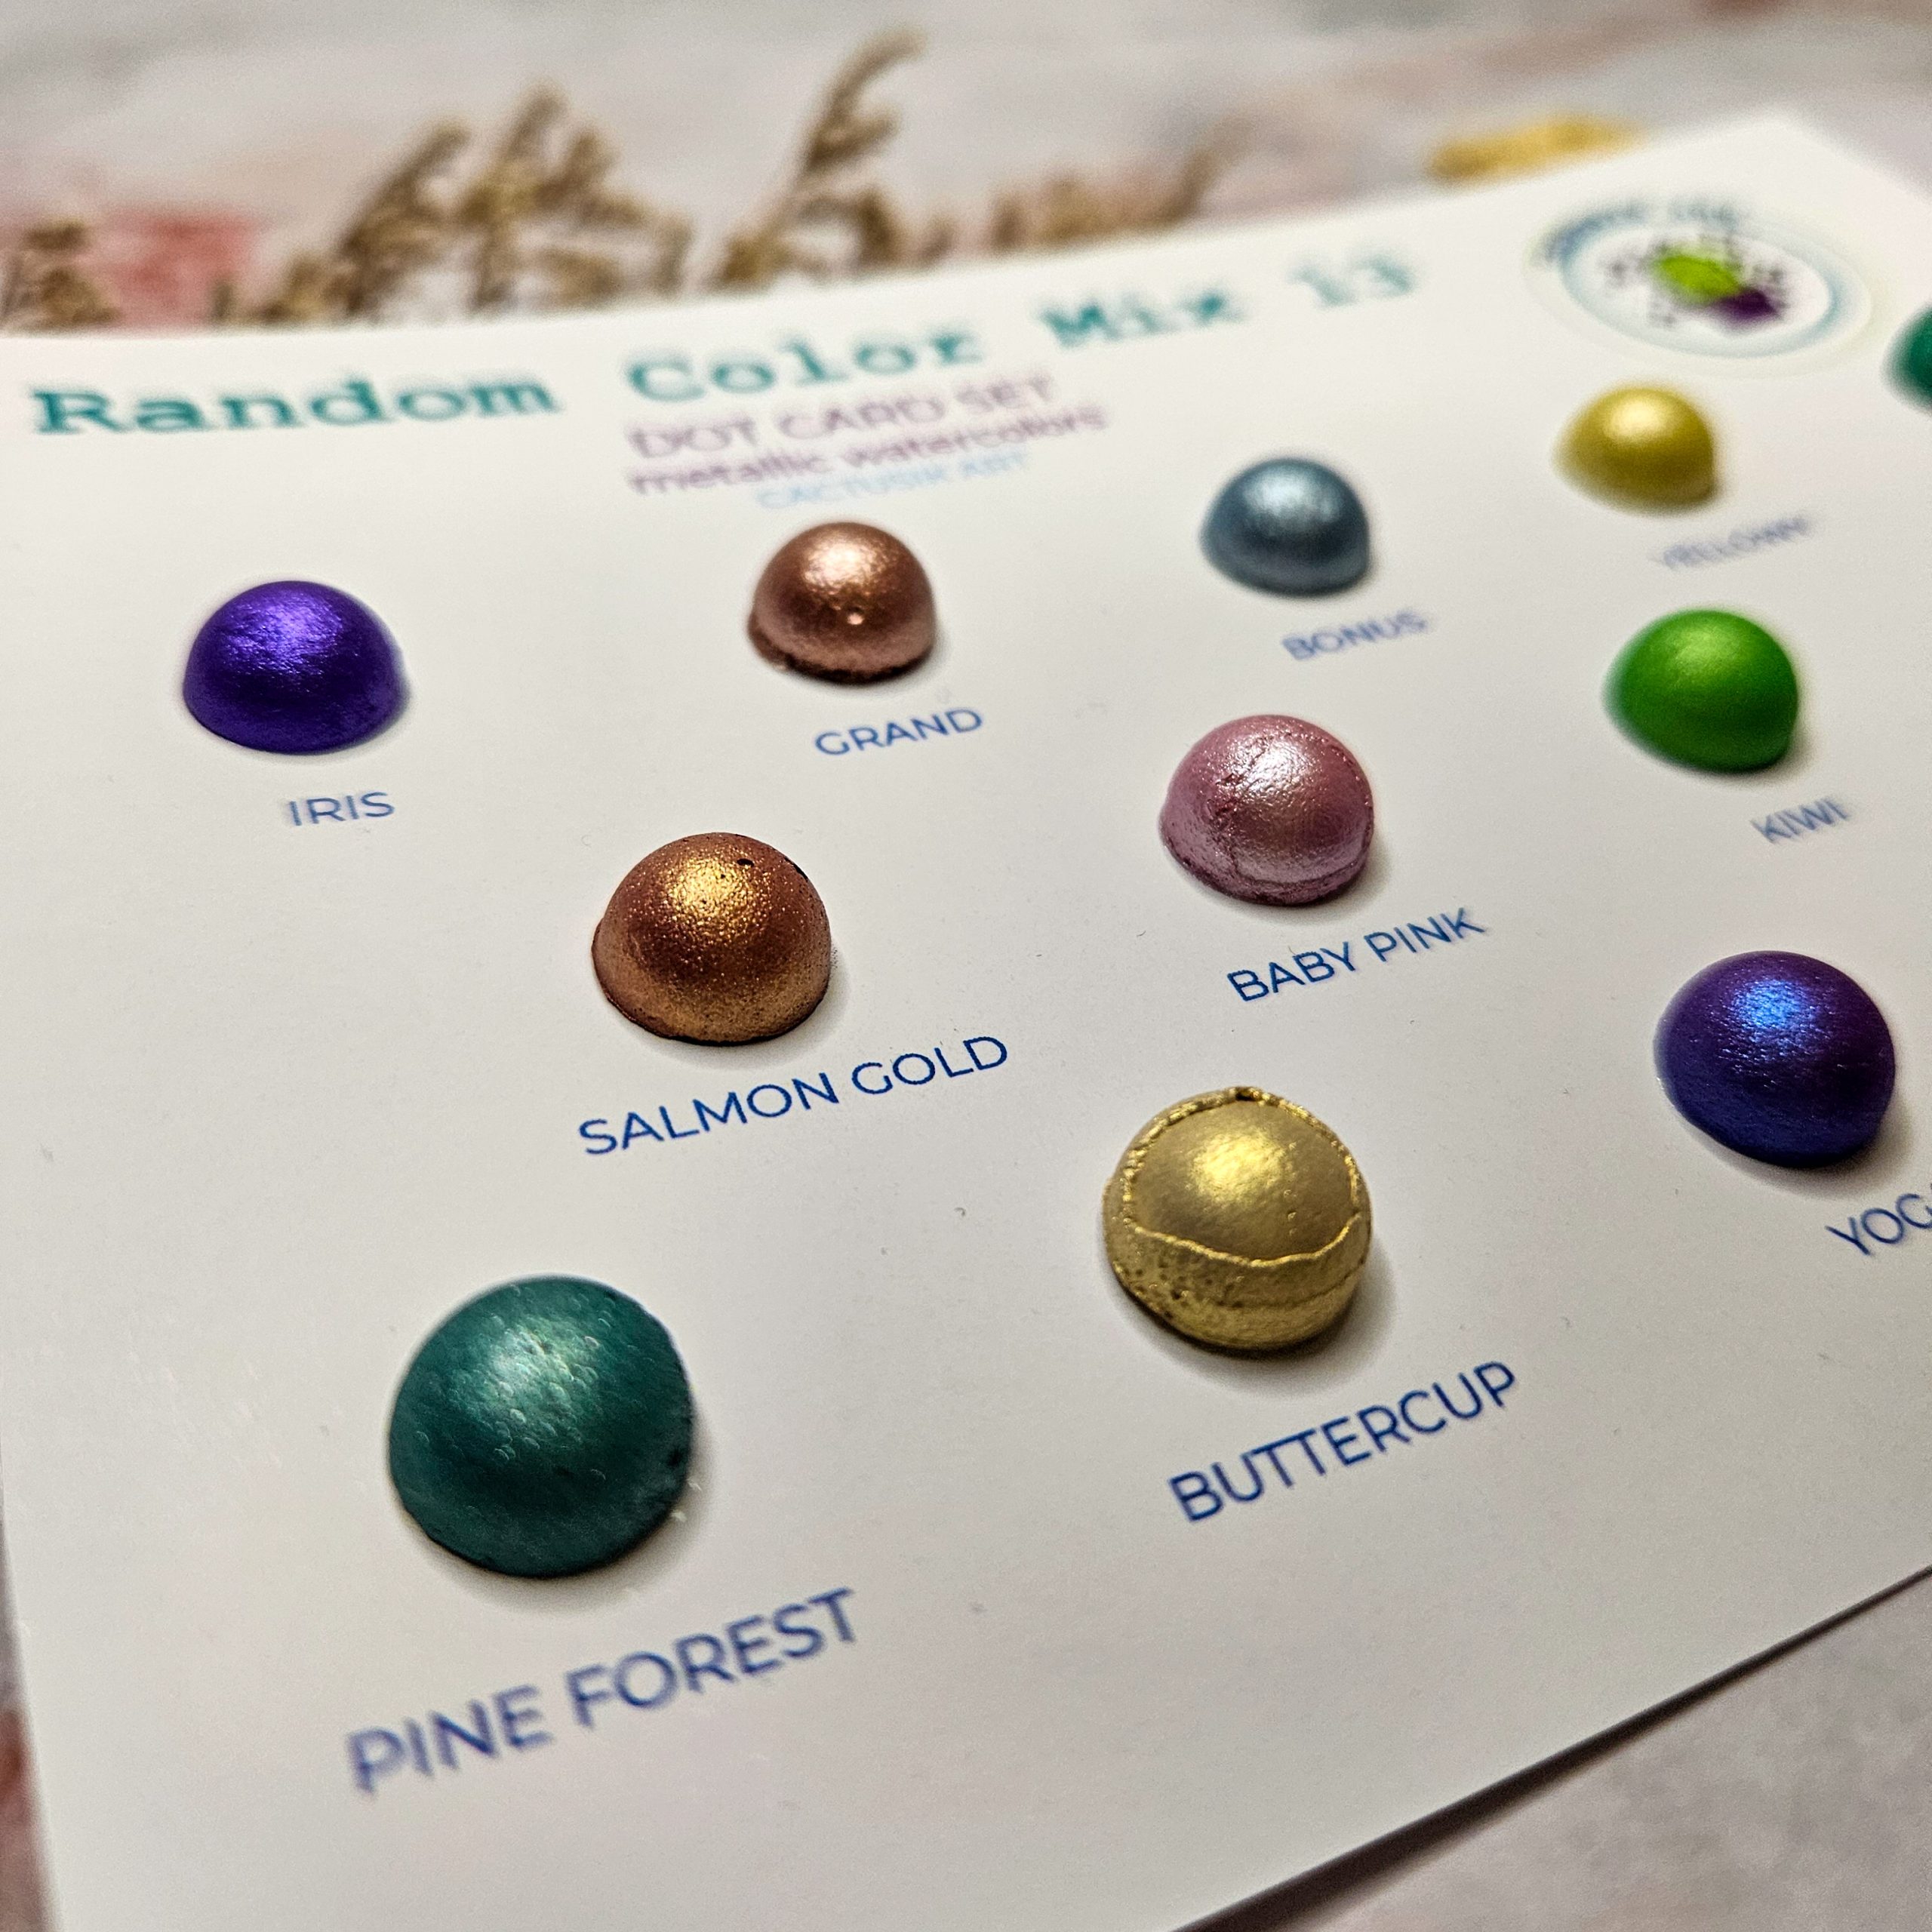 Random Color Mix 13 – Dot Card Set